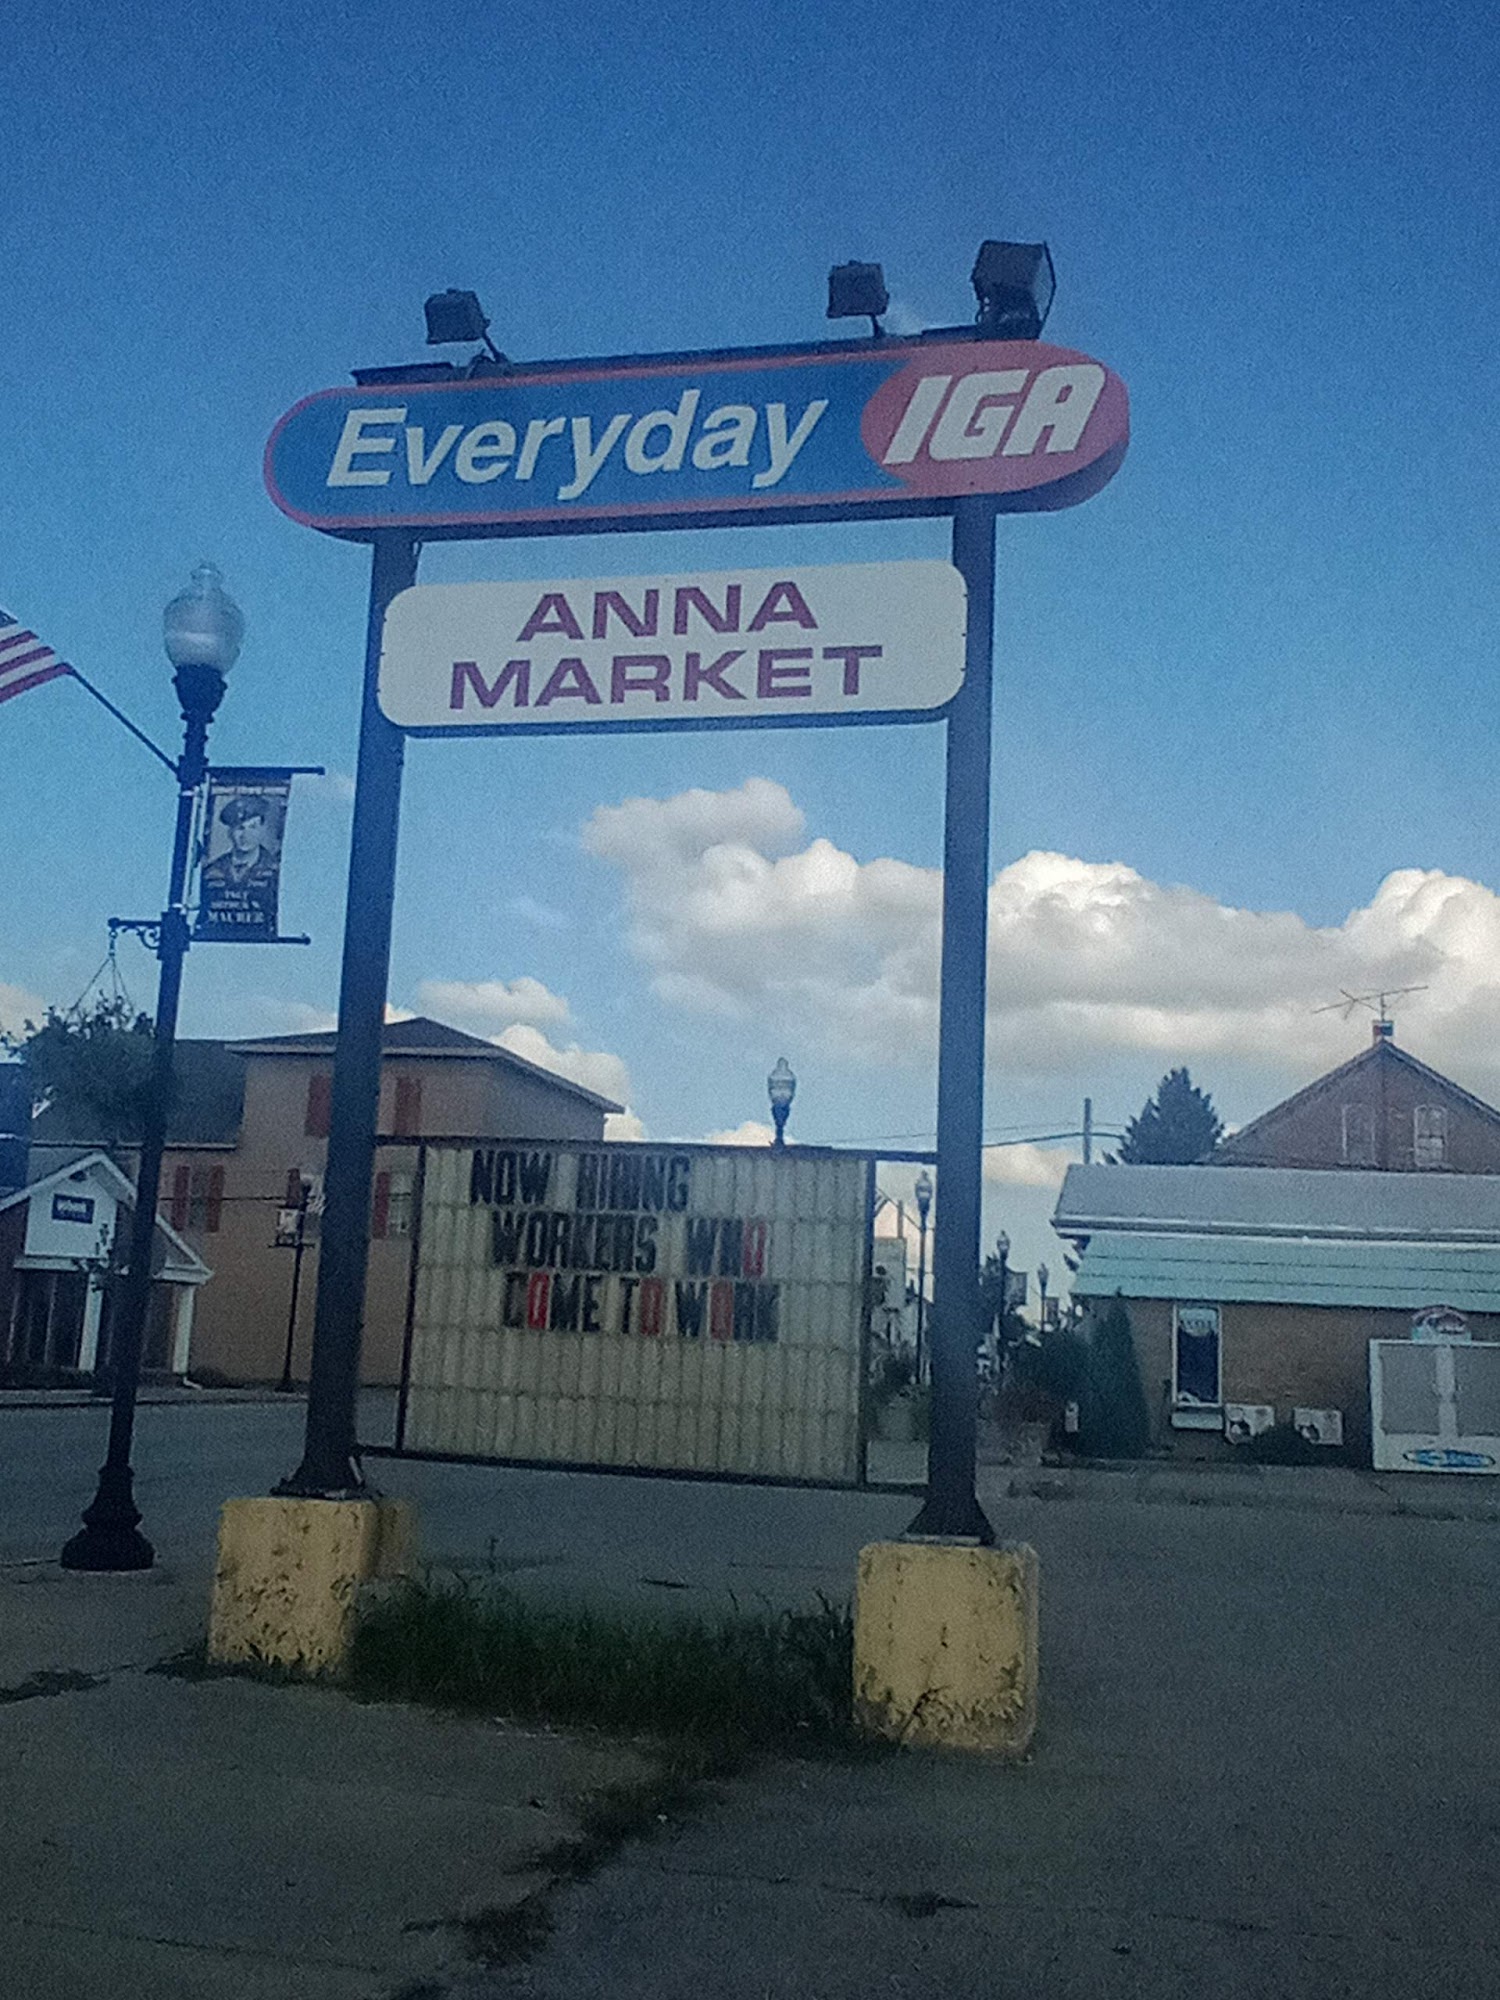 Anna Market IGA